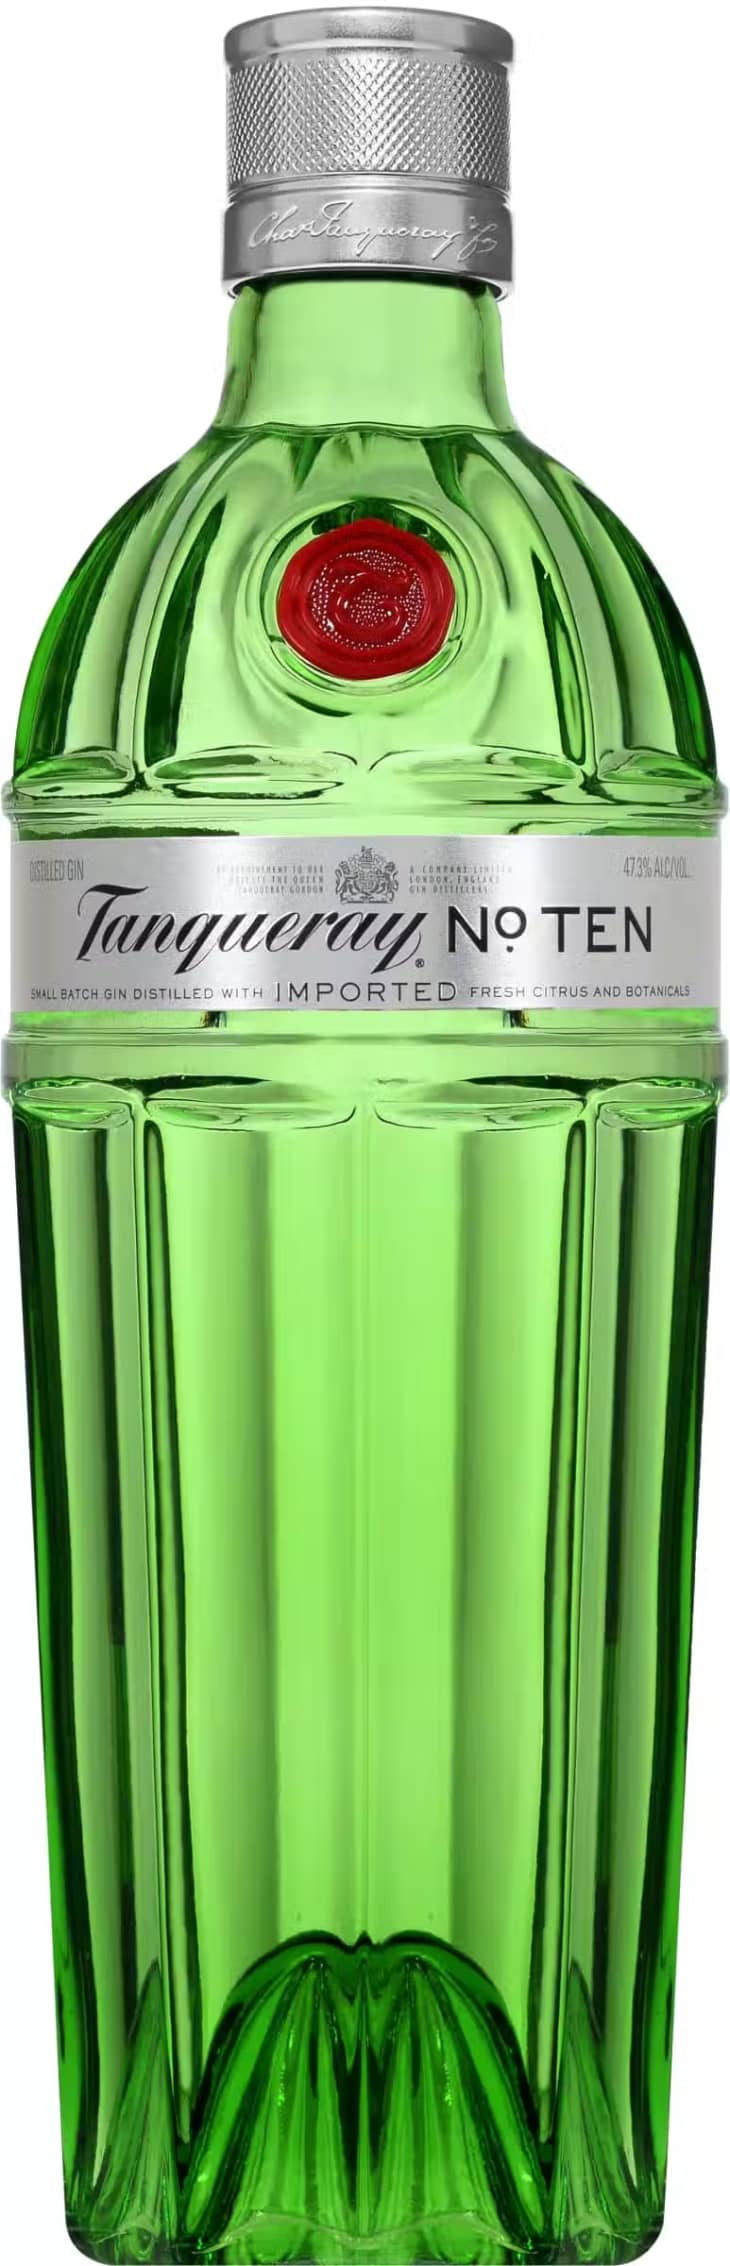 Tanqueray No. TEN Gin at Drizly